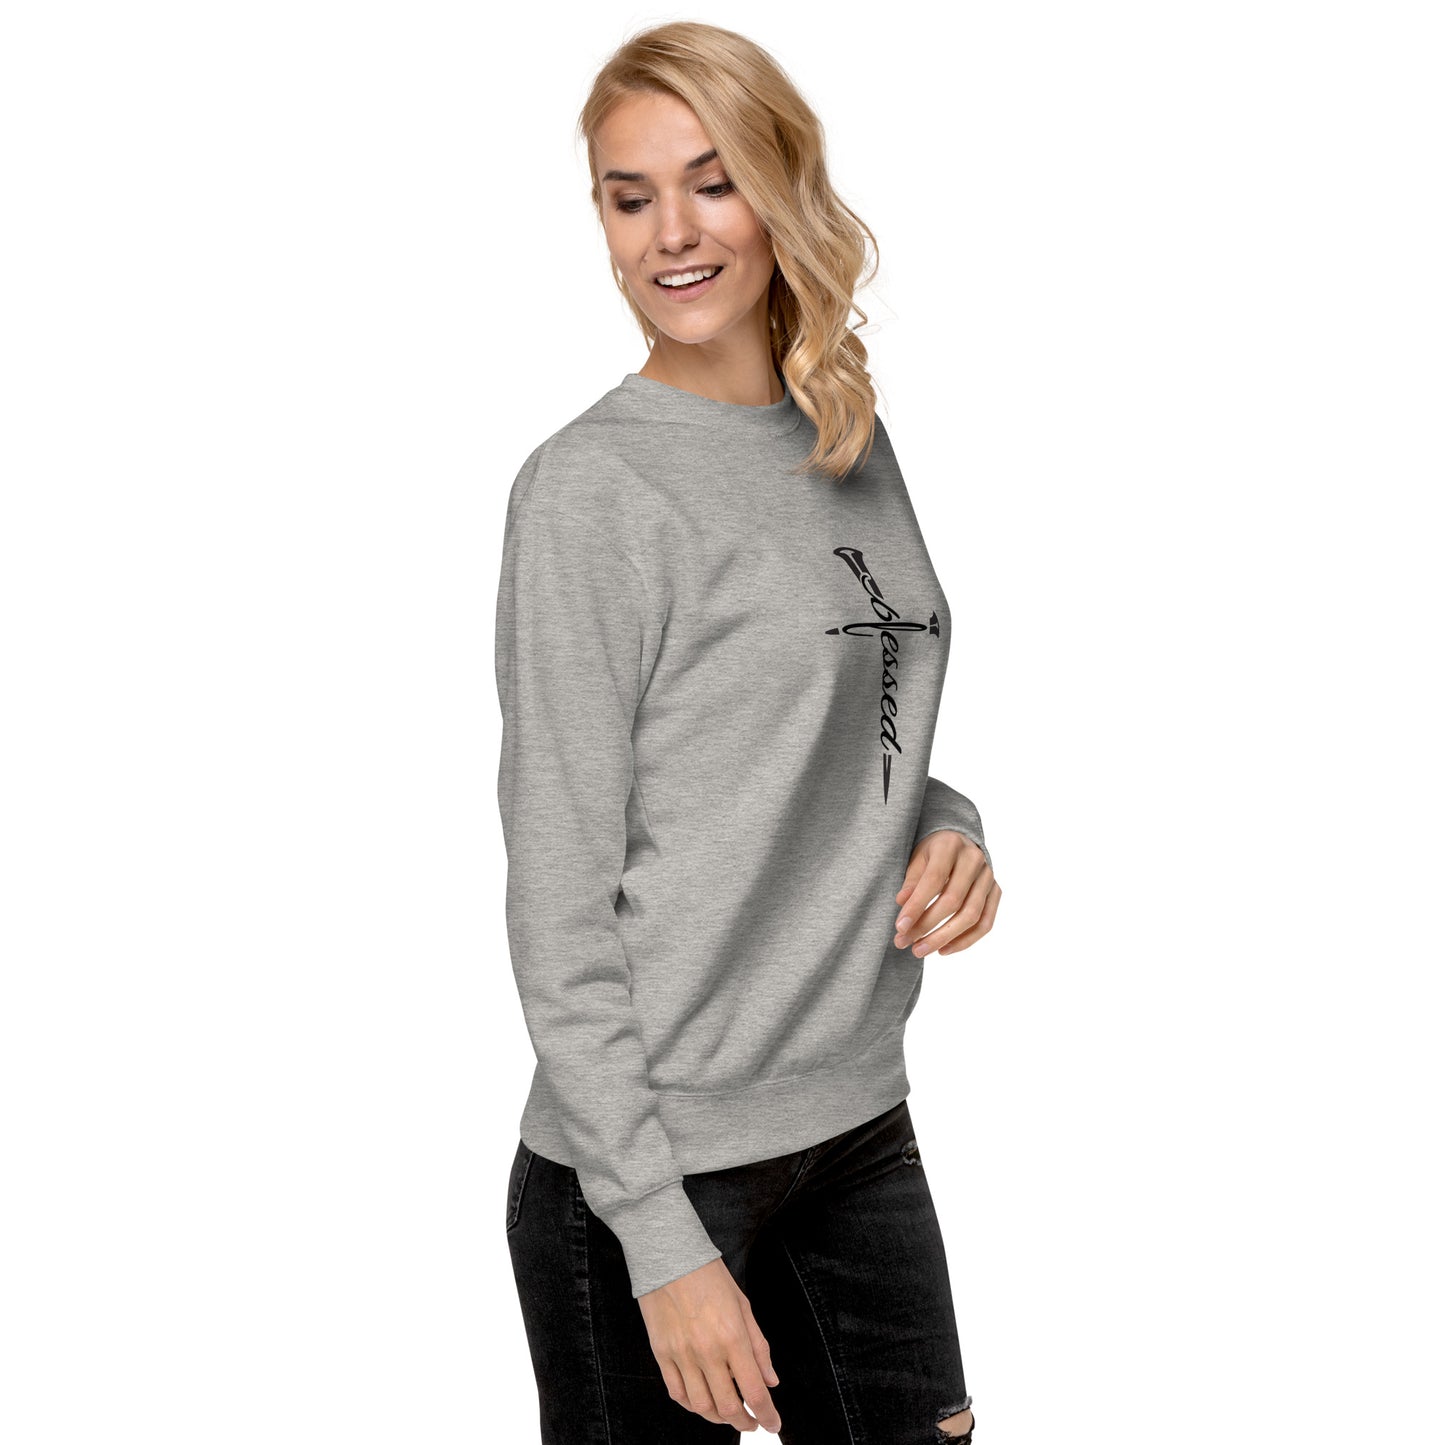 Blessed | Unisex Premium Sweatshirt